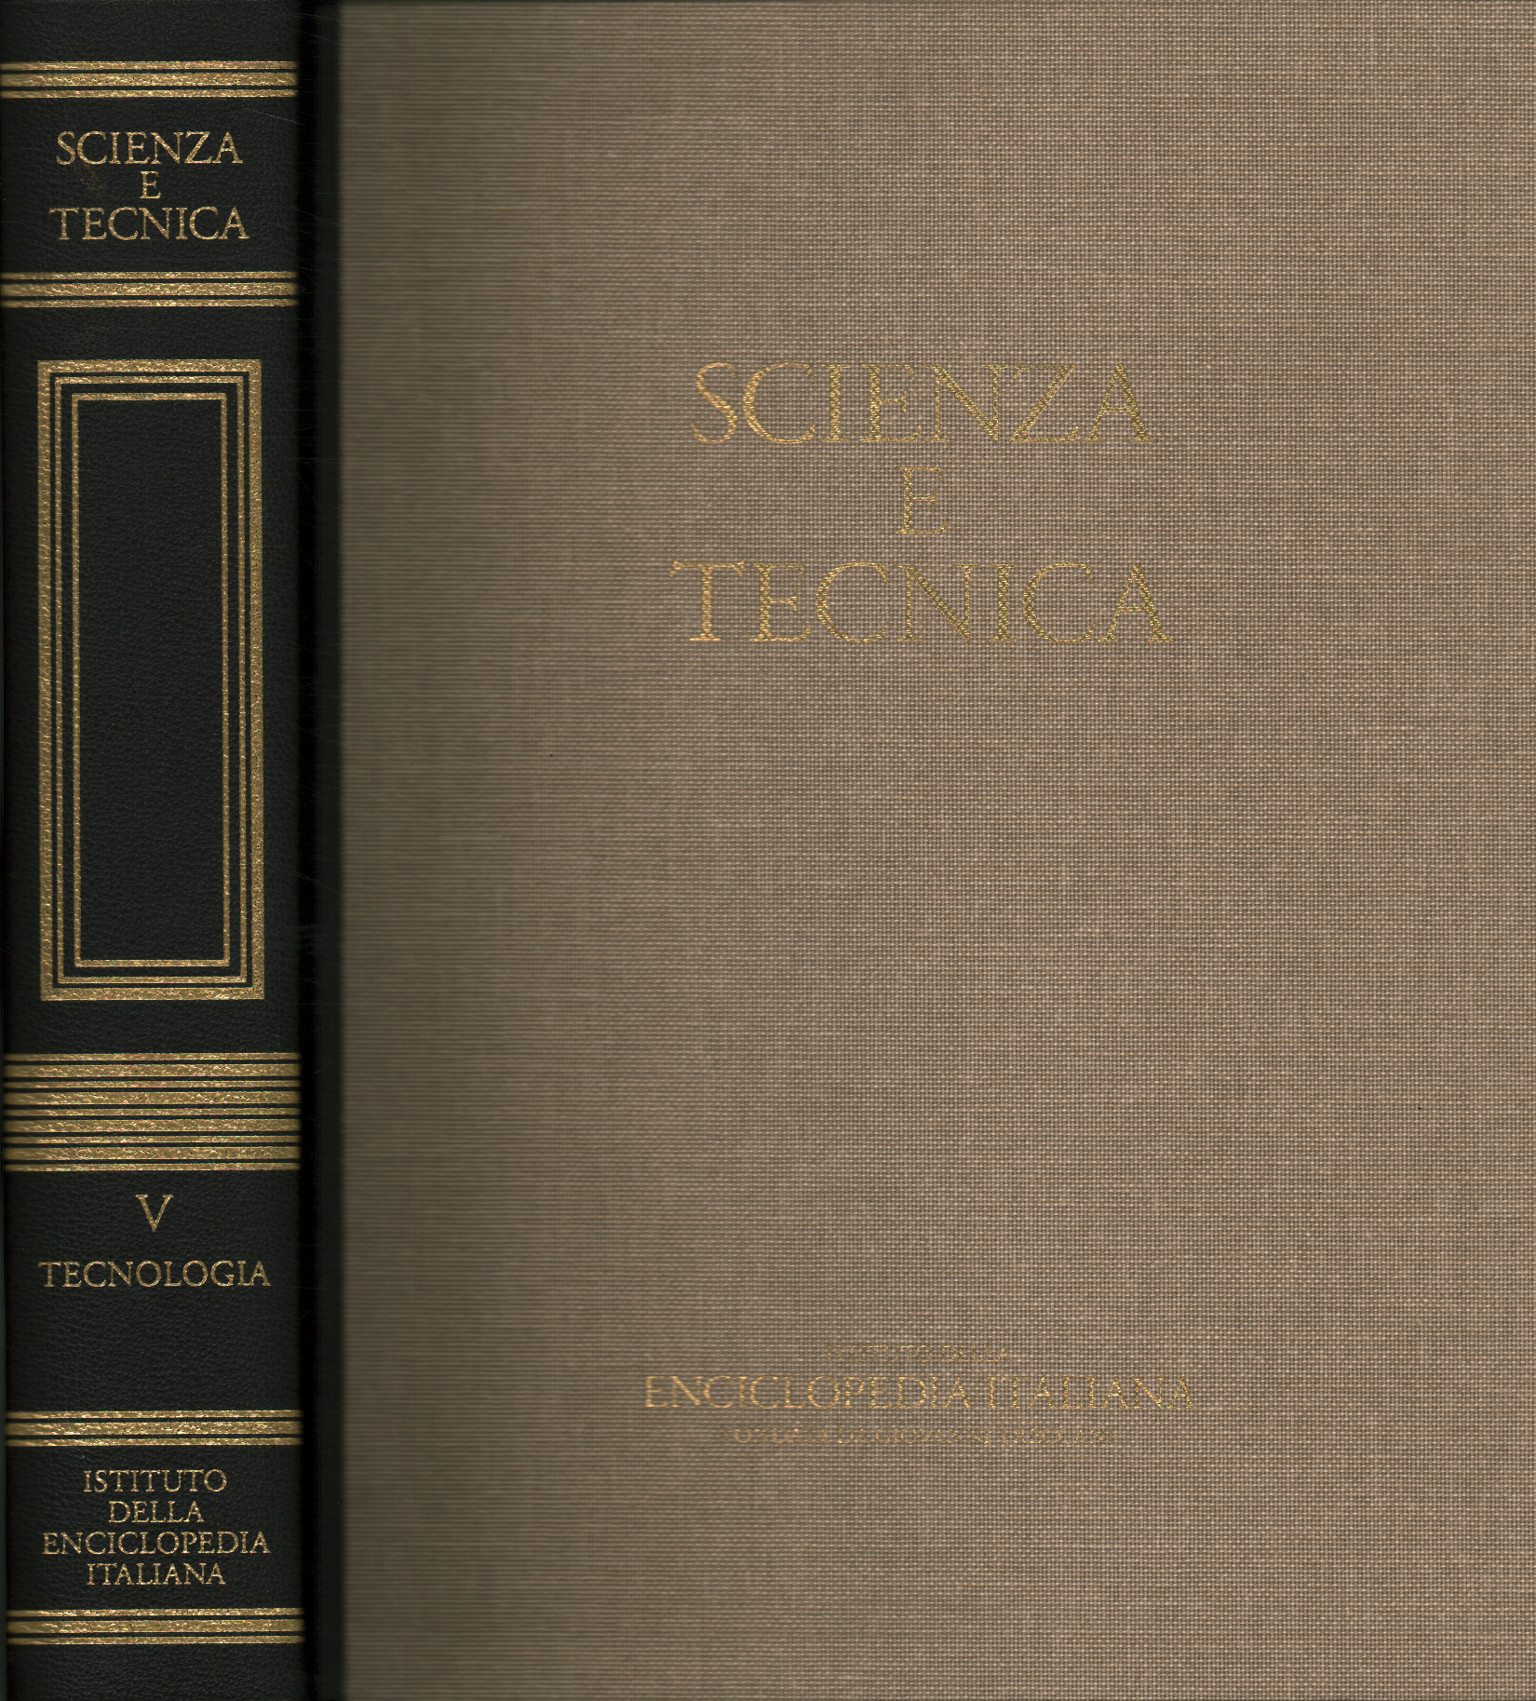 Wissenschaft und Technik. Technologie (Band V)